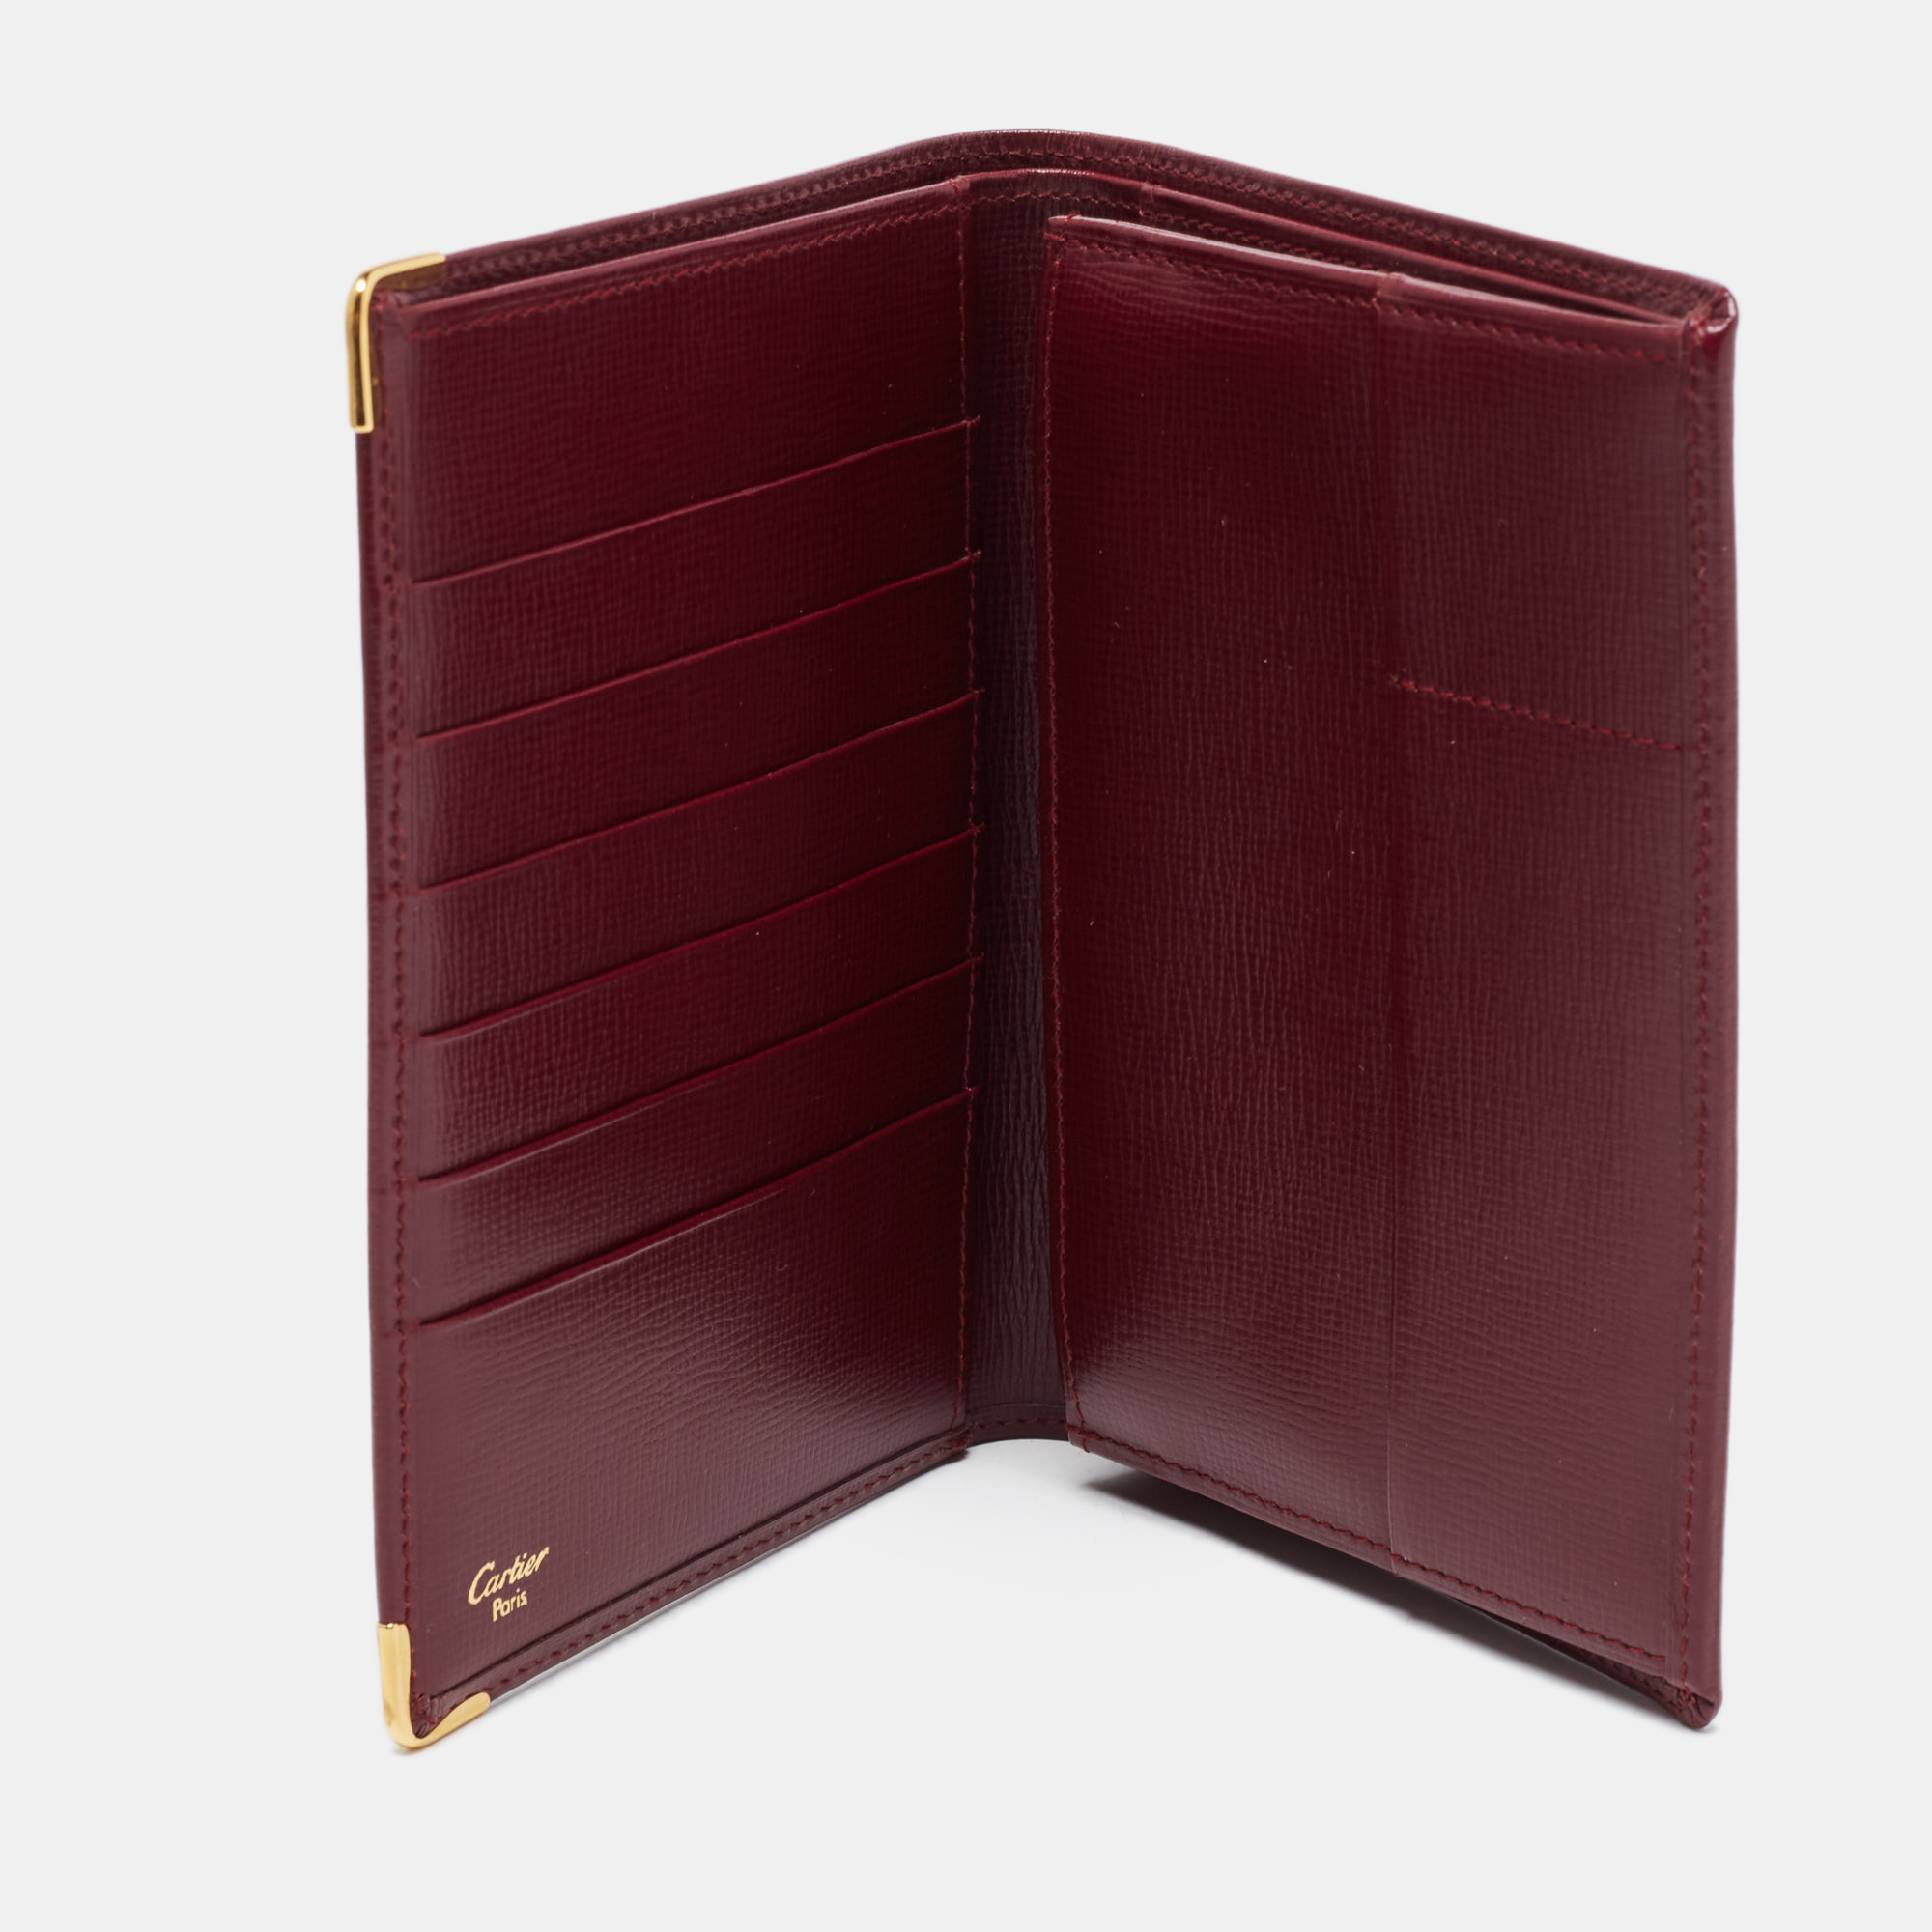 

Cartier Burgundy Leather Must de Cartier Bifold Card Holder